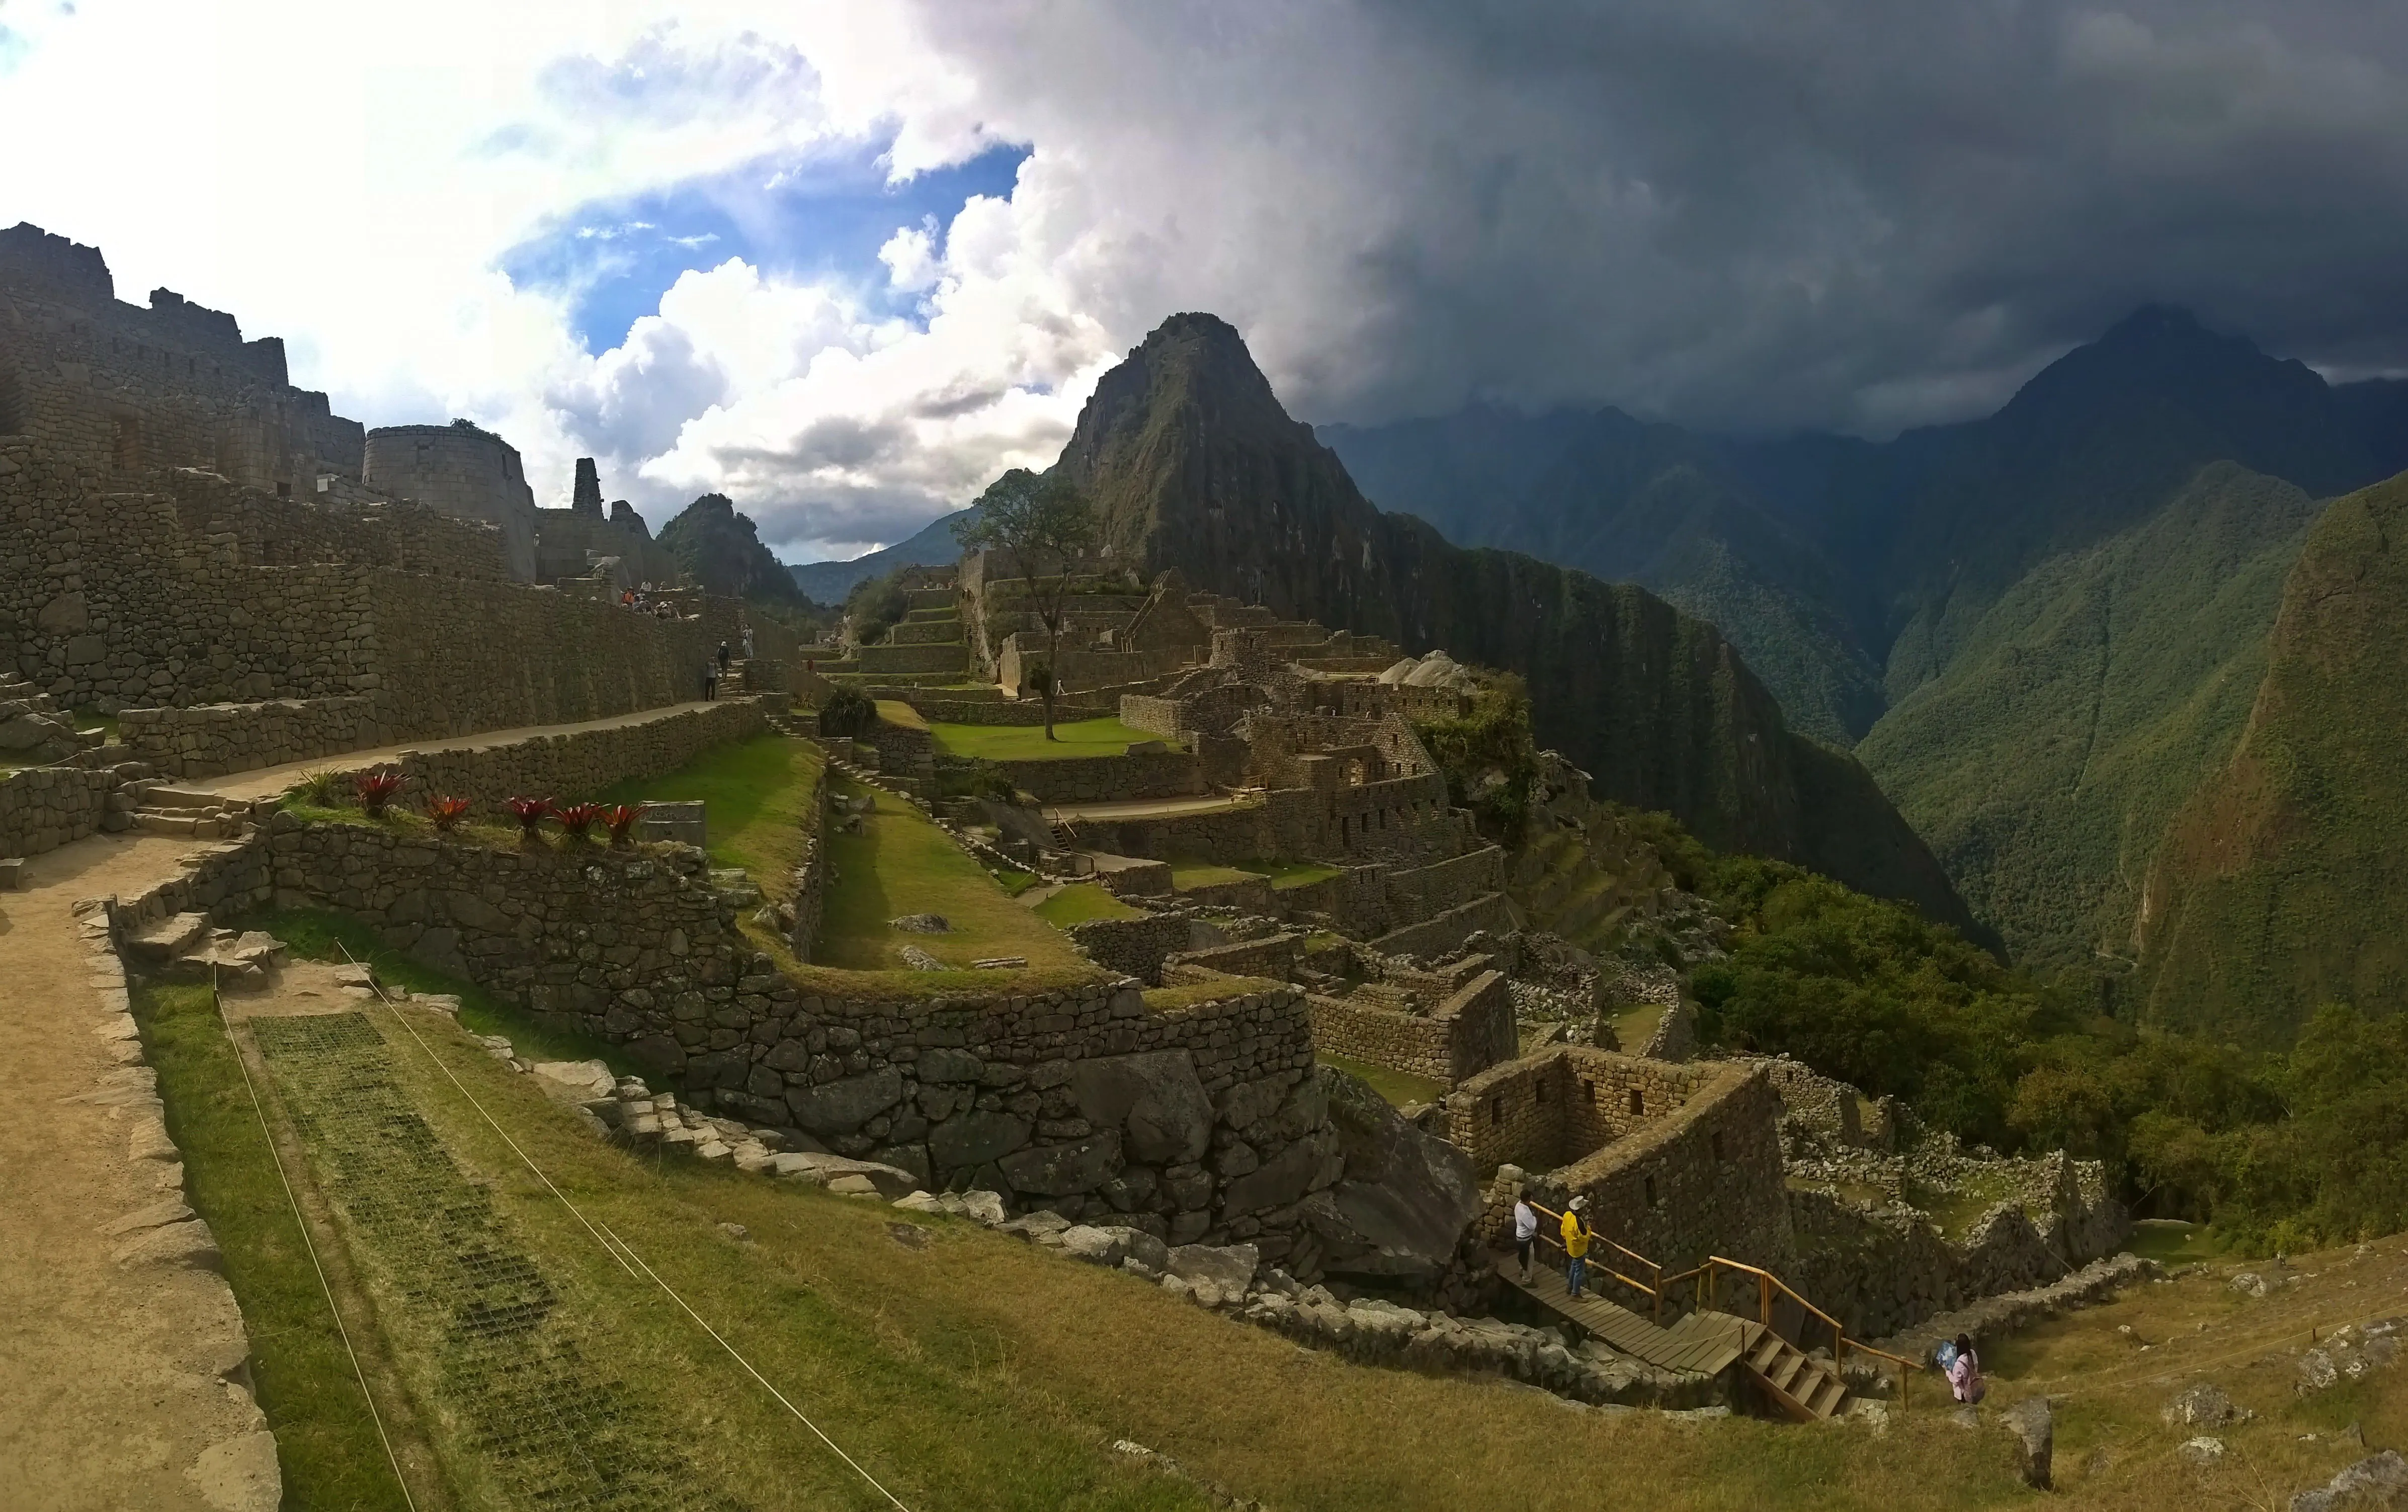 Descubre las maravillas de Machu Picchu